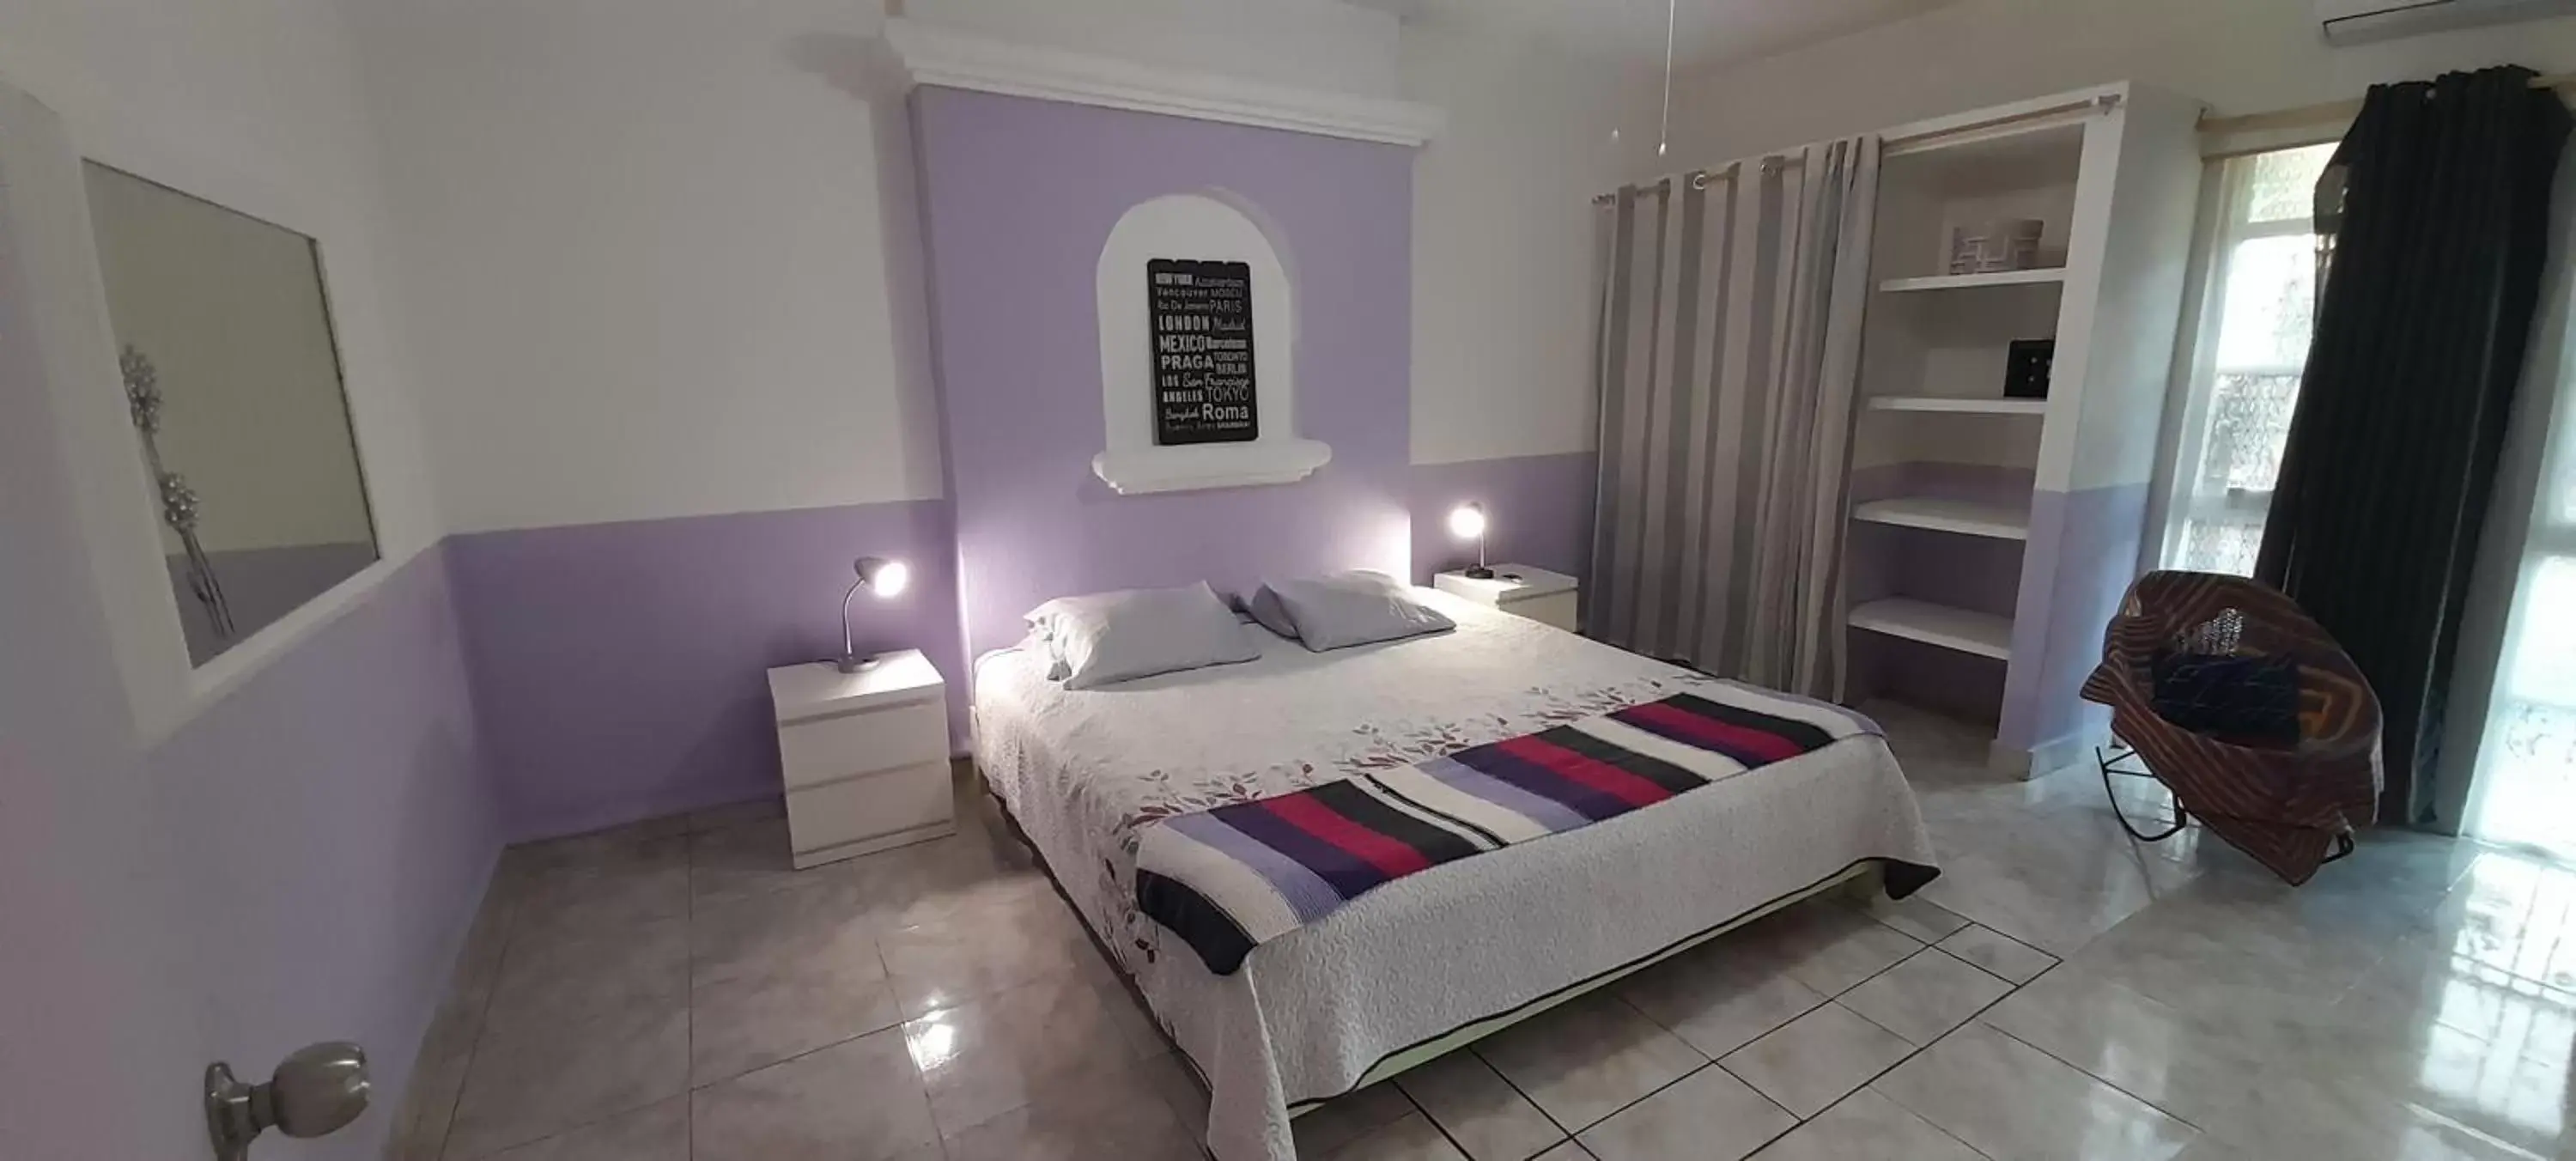 Bedroom, Bed in Claro de Luna